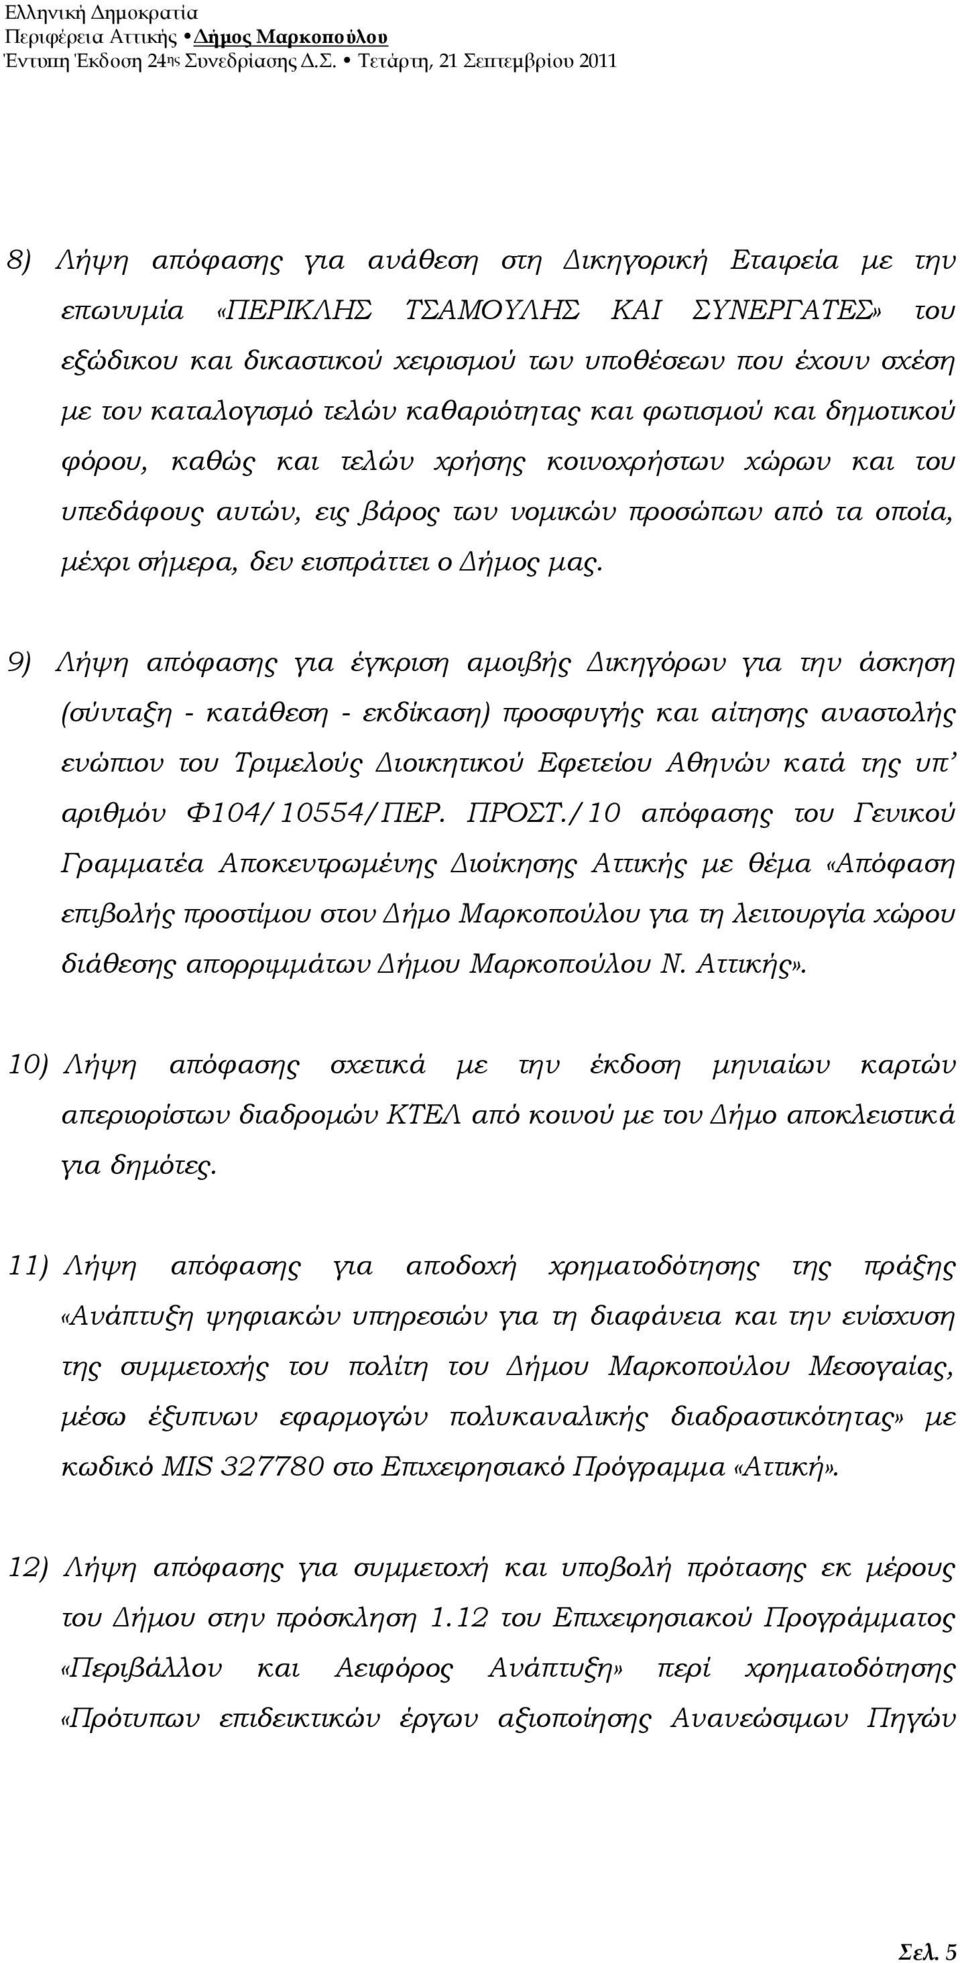 9) Λήψη απόφασης για έγκριση αµοιβής ικηγόρων για την άσκηση (σύνταξη - κατάθεση - εκδίκαση) προσφυγής και αίτησης αναστολής ενώπιον του Τριµελούς ιοικητικού Εφετείου Αθηνών κατά της υπ αριθµόν